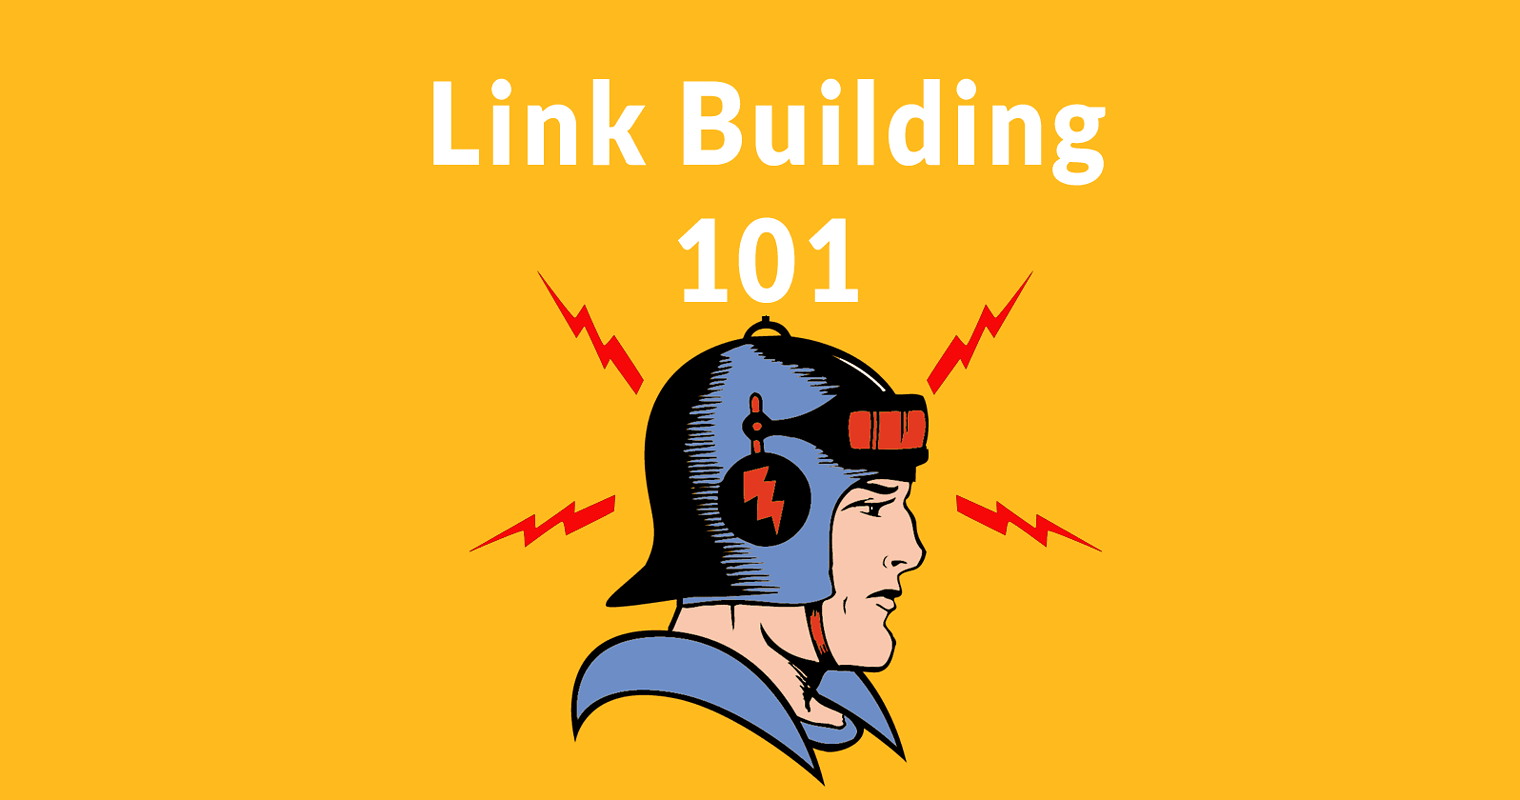 Link Building 101: Suggest a Link Method